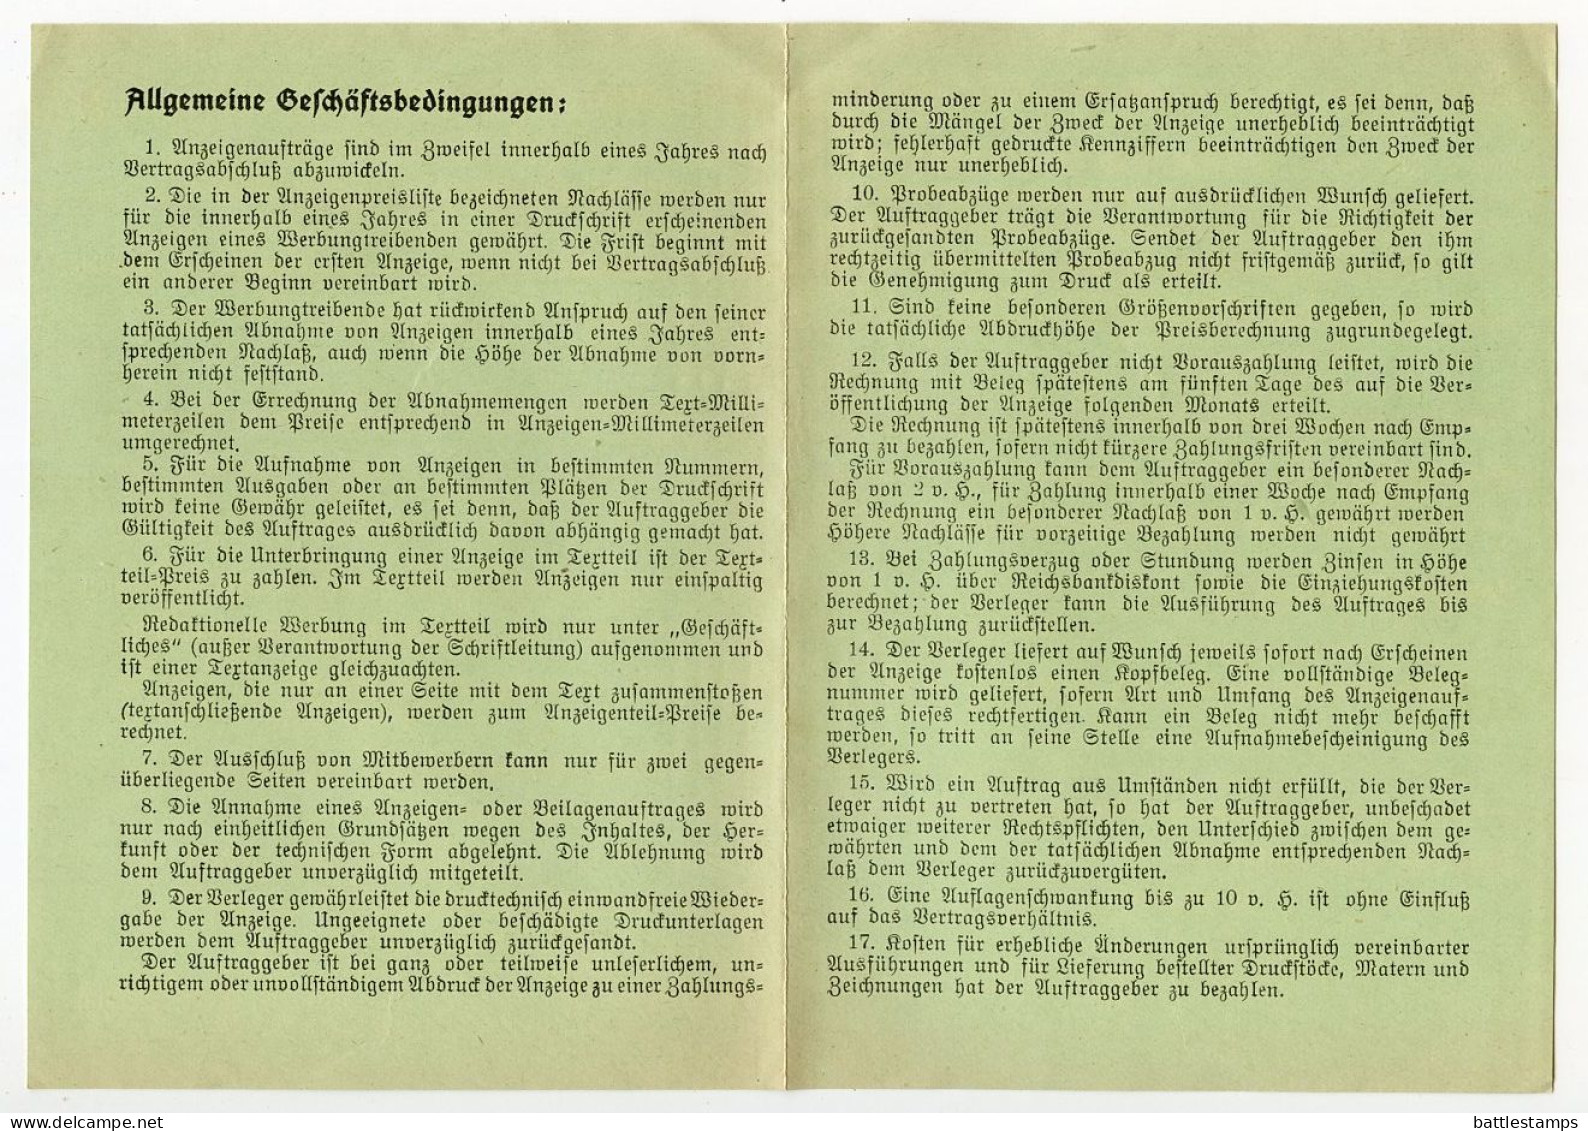 Germany 1935 Cover & Letter; München - Der Deutscher Pelztierzüchter To Schiplage; 3pf. Hindenburg - Storia Postale